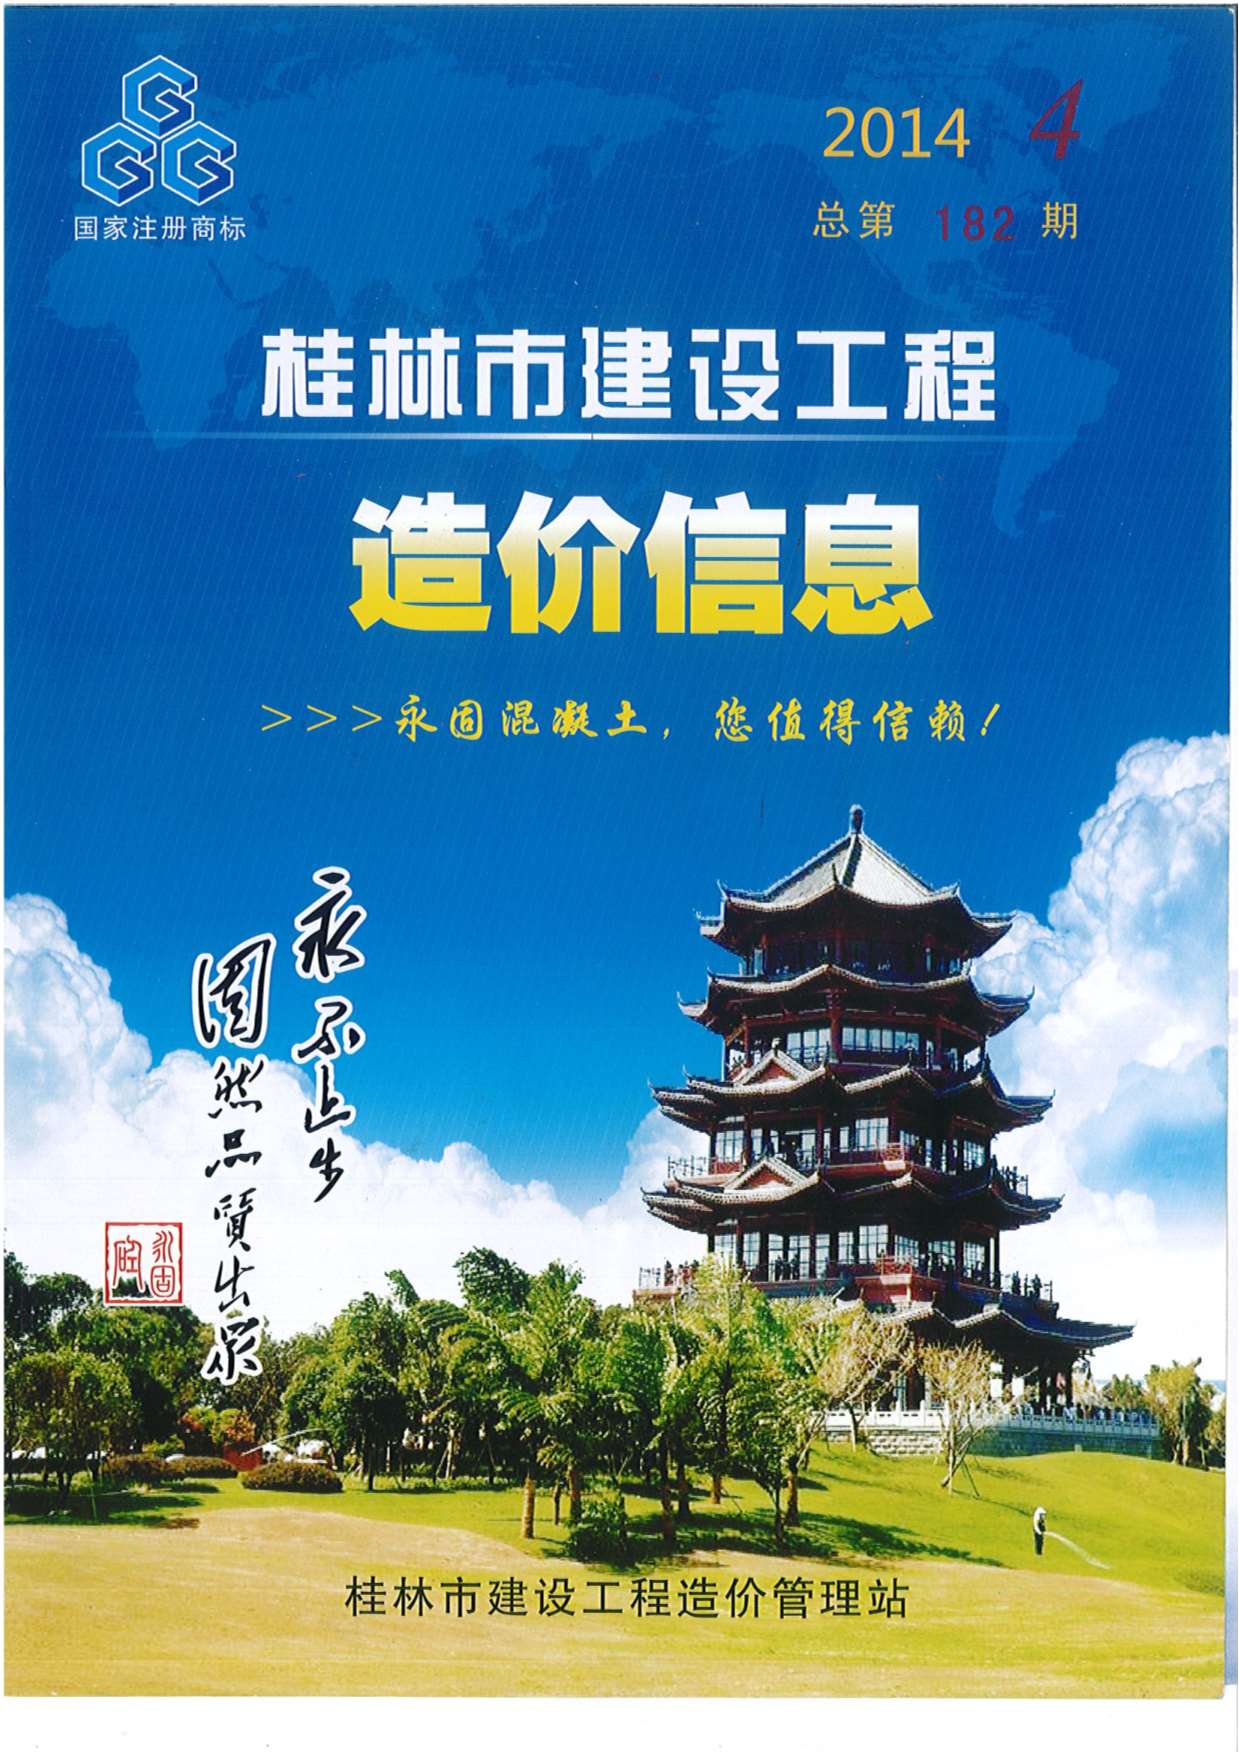 桂林市2014年4月建设工程造价信息造价库信息价